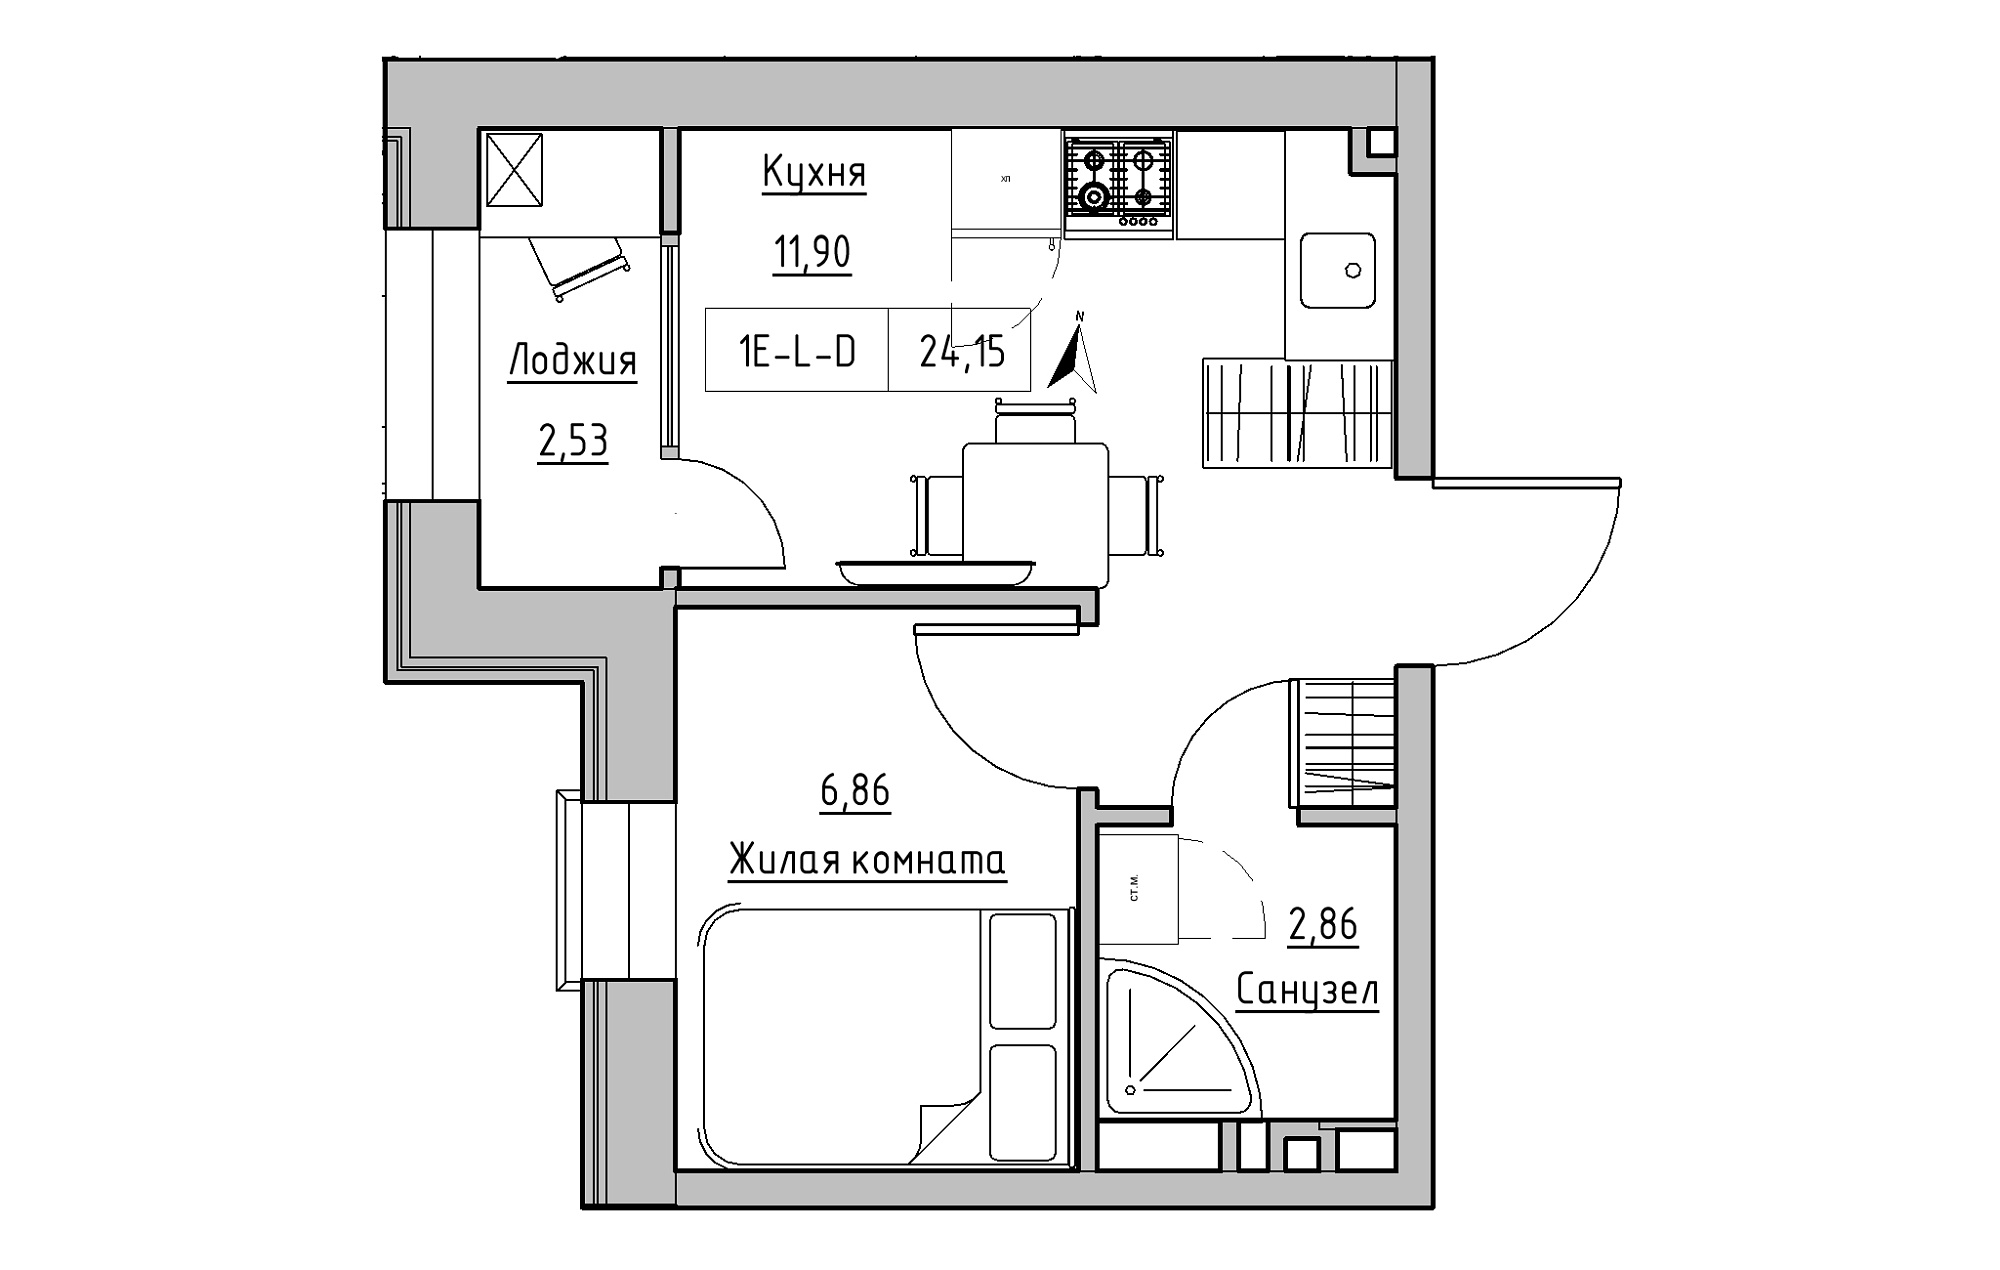 Планування 1-к квартира площею 24.15м2, KS-019-01/0001.